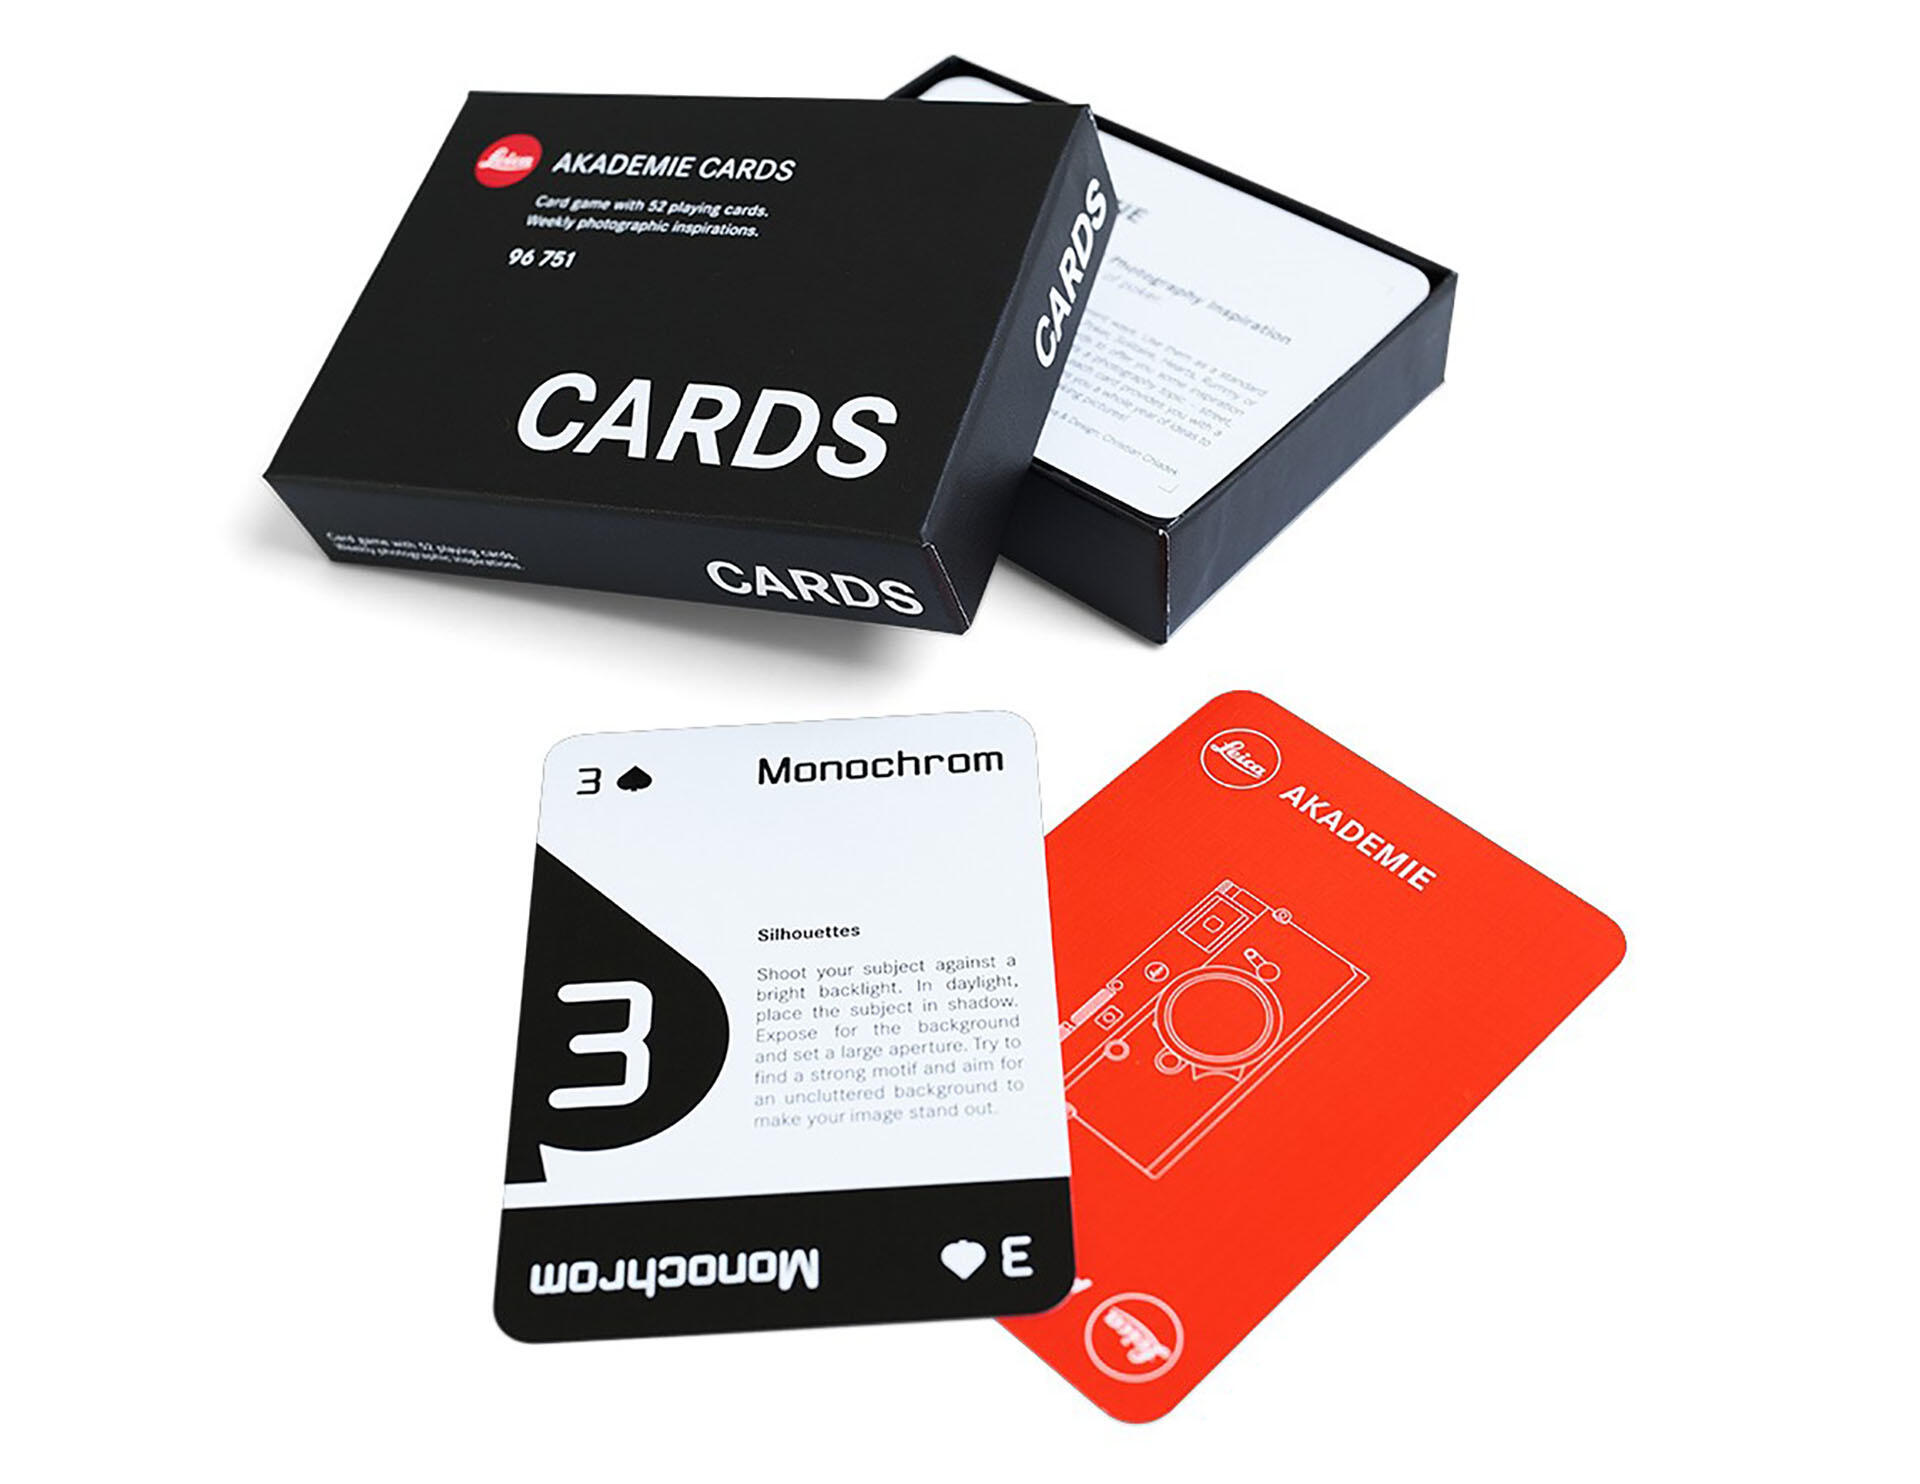 デジタル一眼Leica AKADEMIE CARDS #96751 プレイング・カード